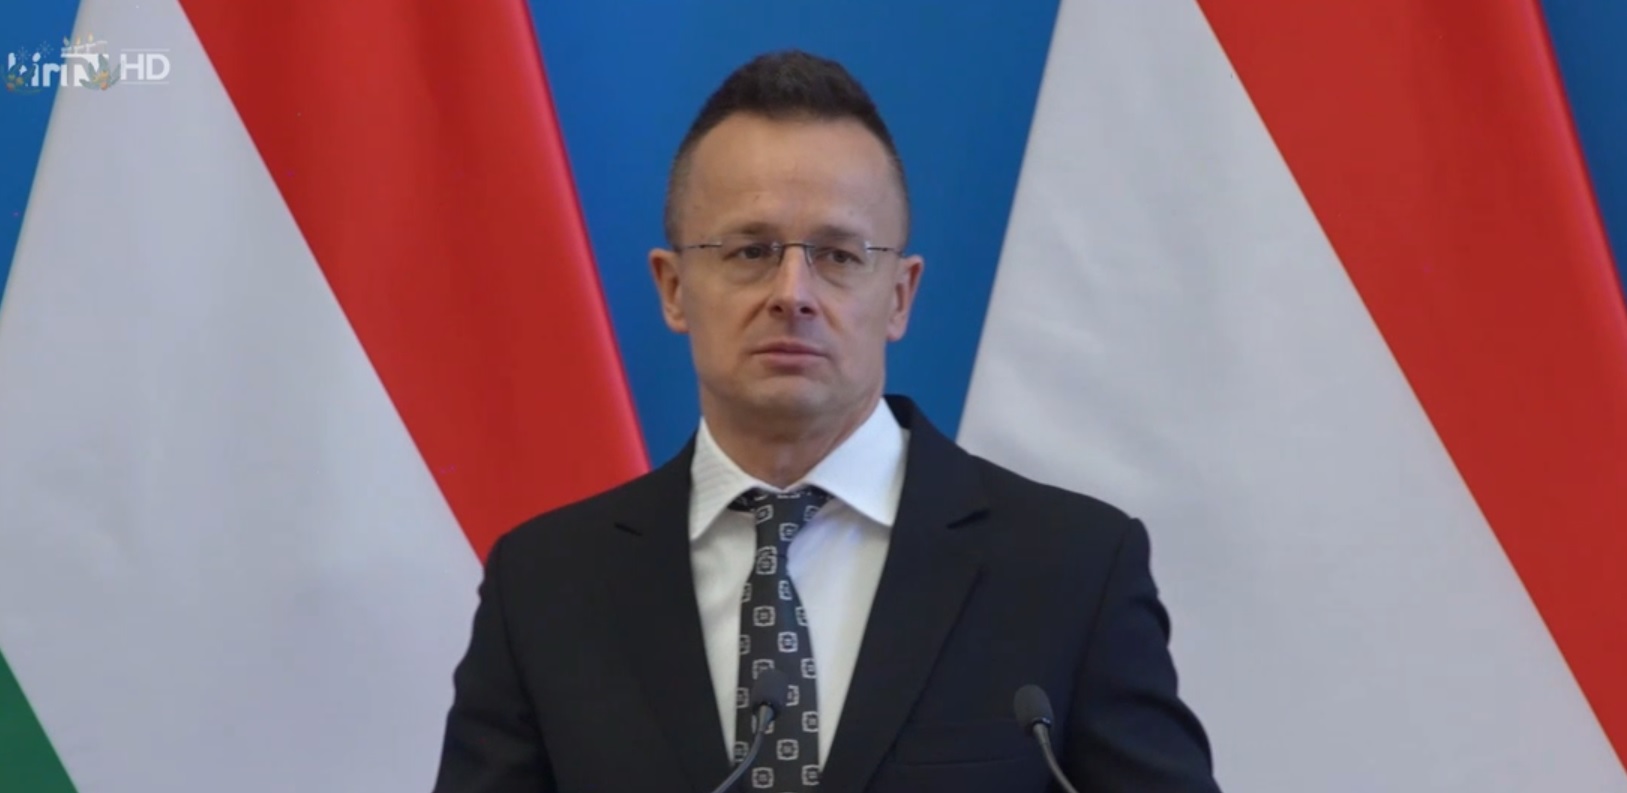 Magyarországon a kabinet kormányoz, nem pedig az unió + videó